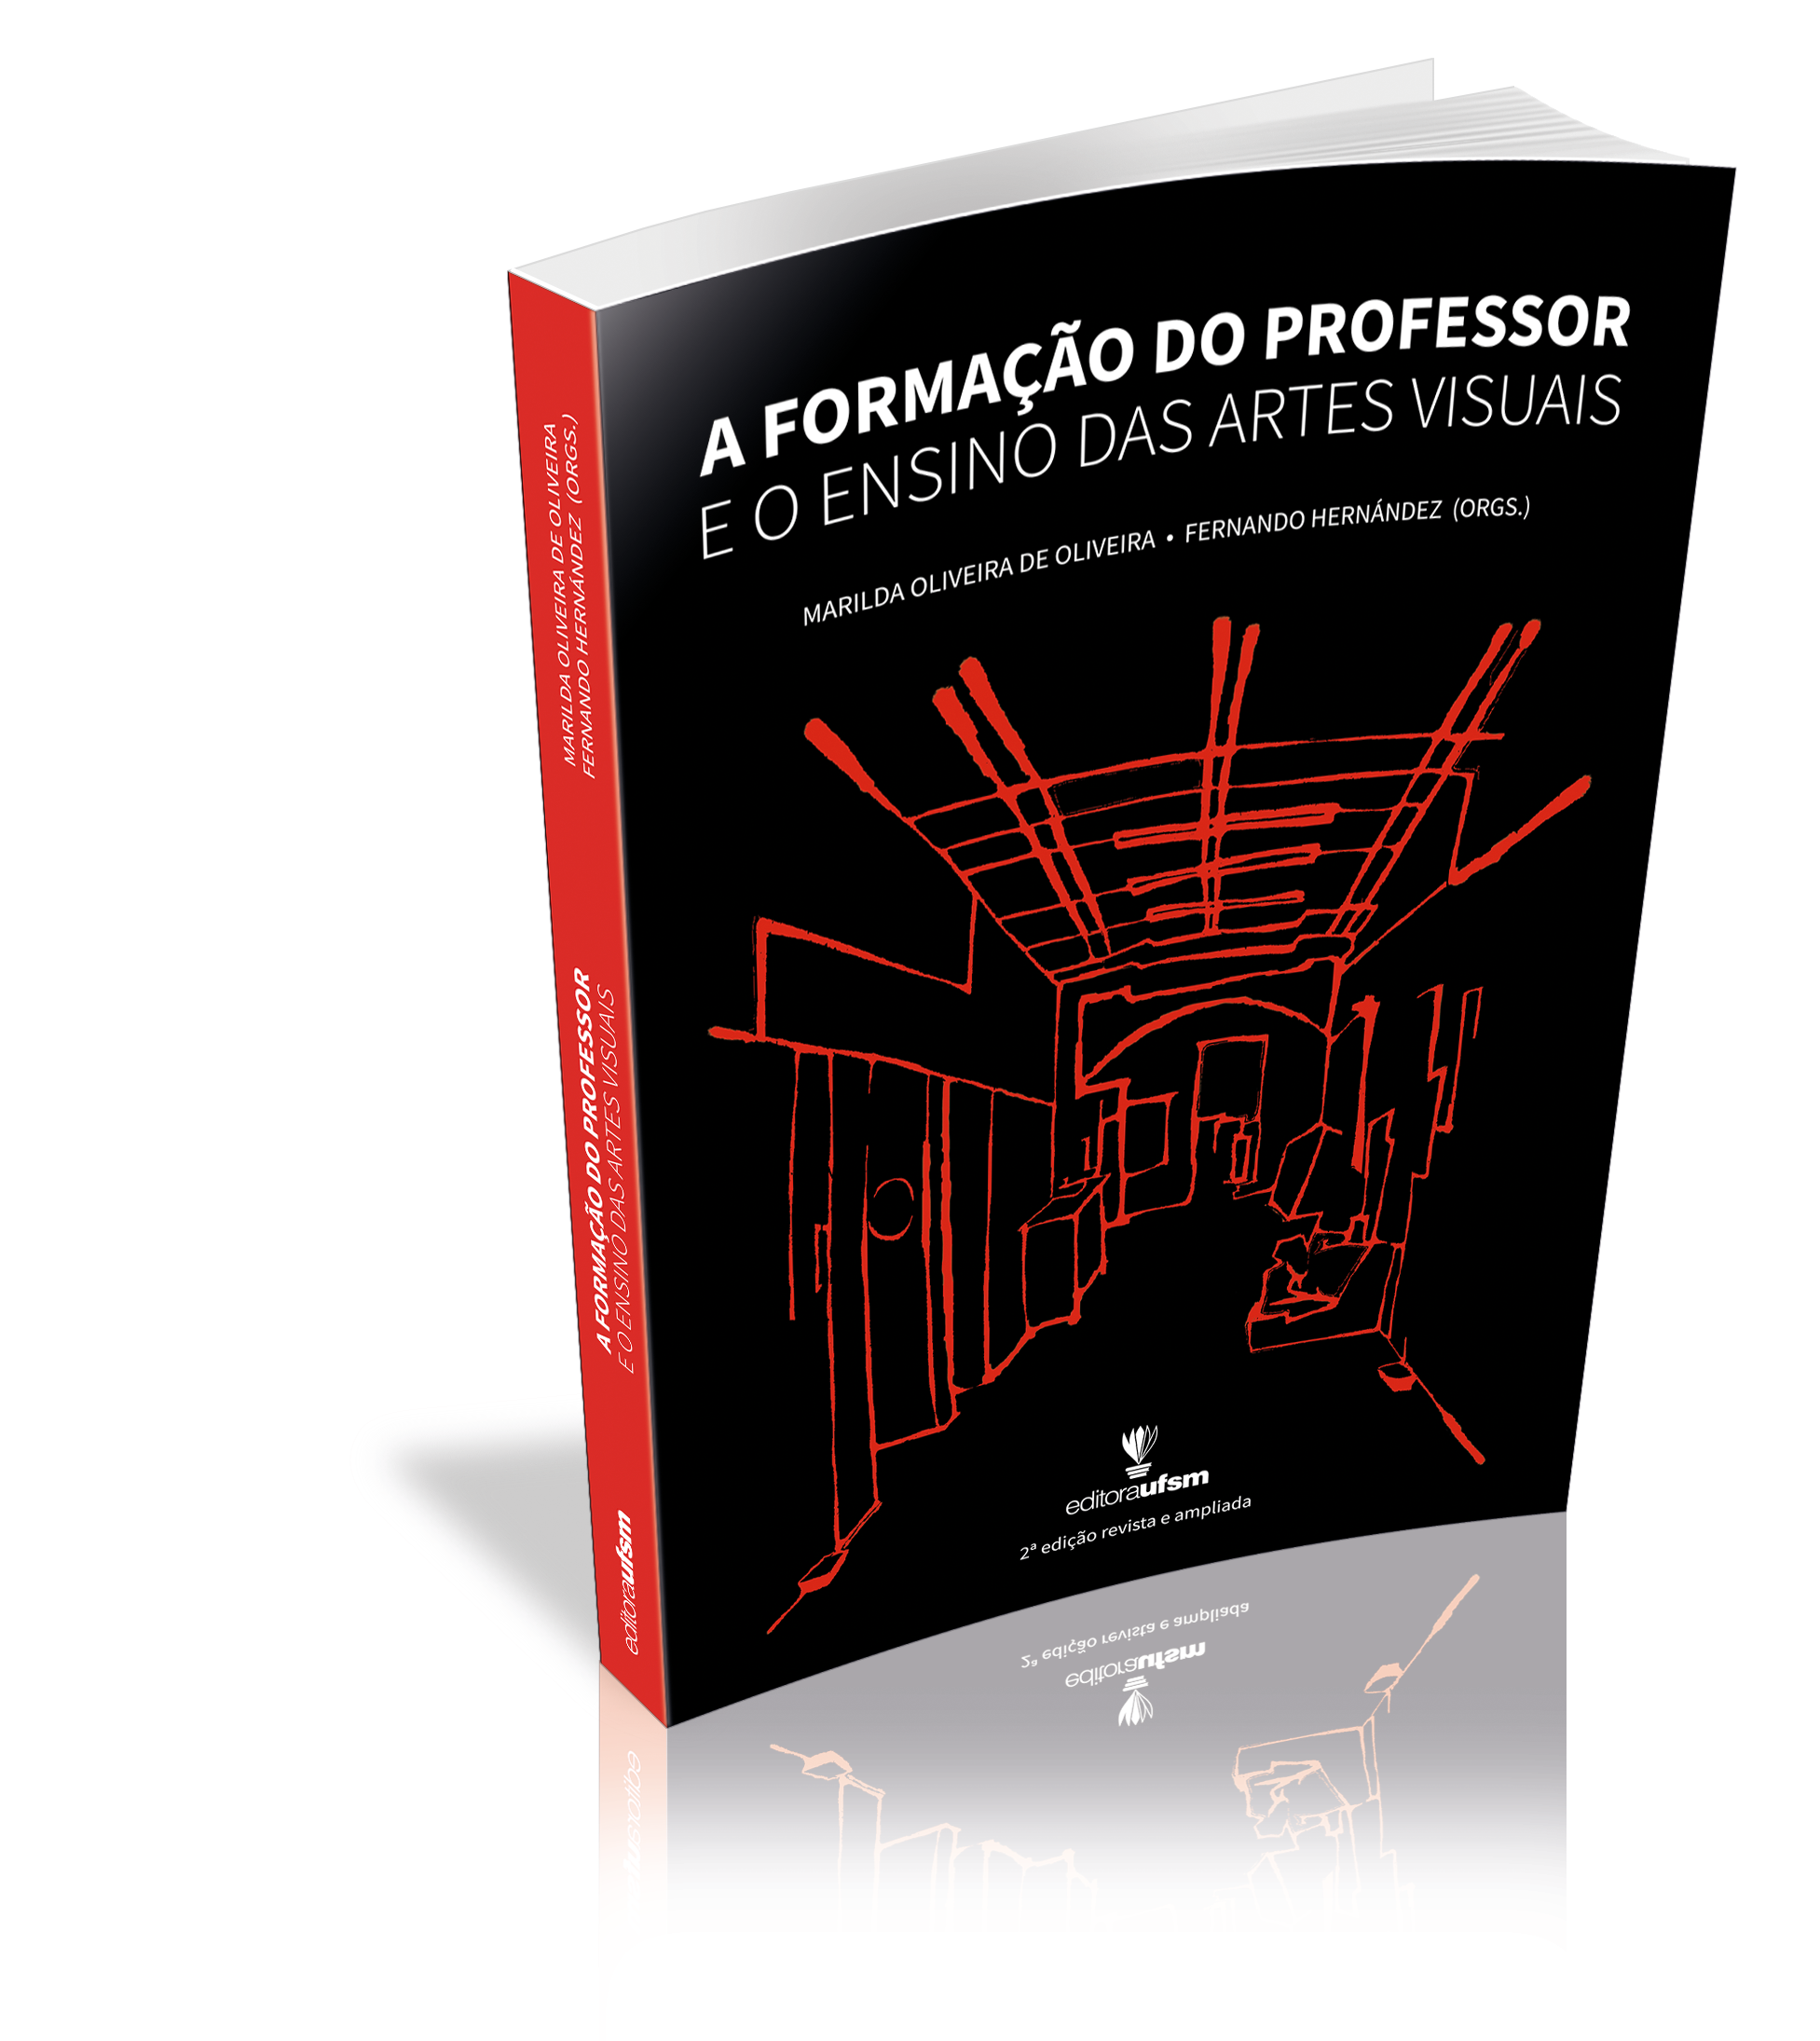 Capa do livro A Formação do Professor e o Ensino das Artes Visuais